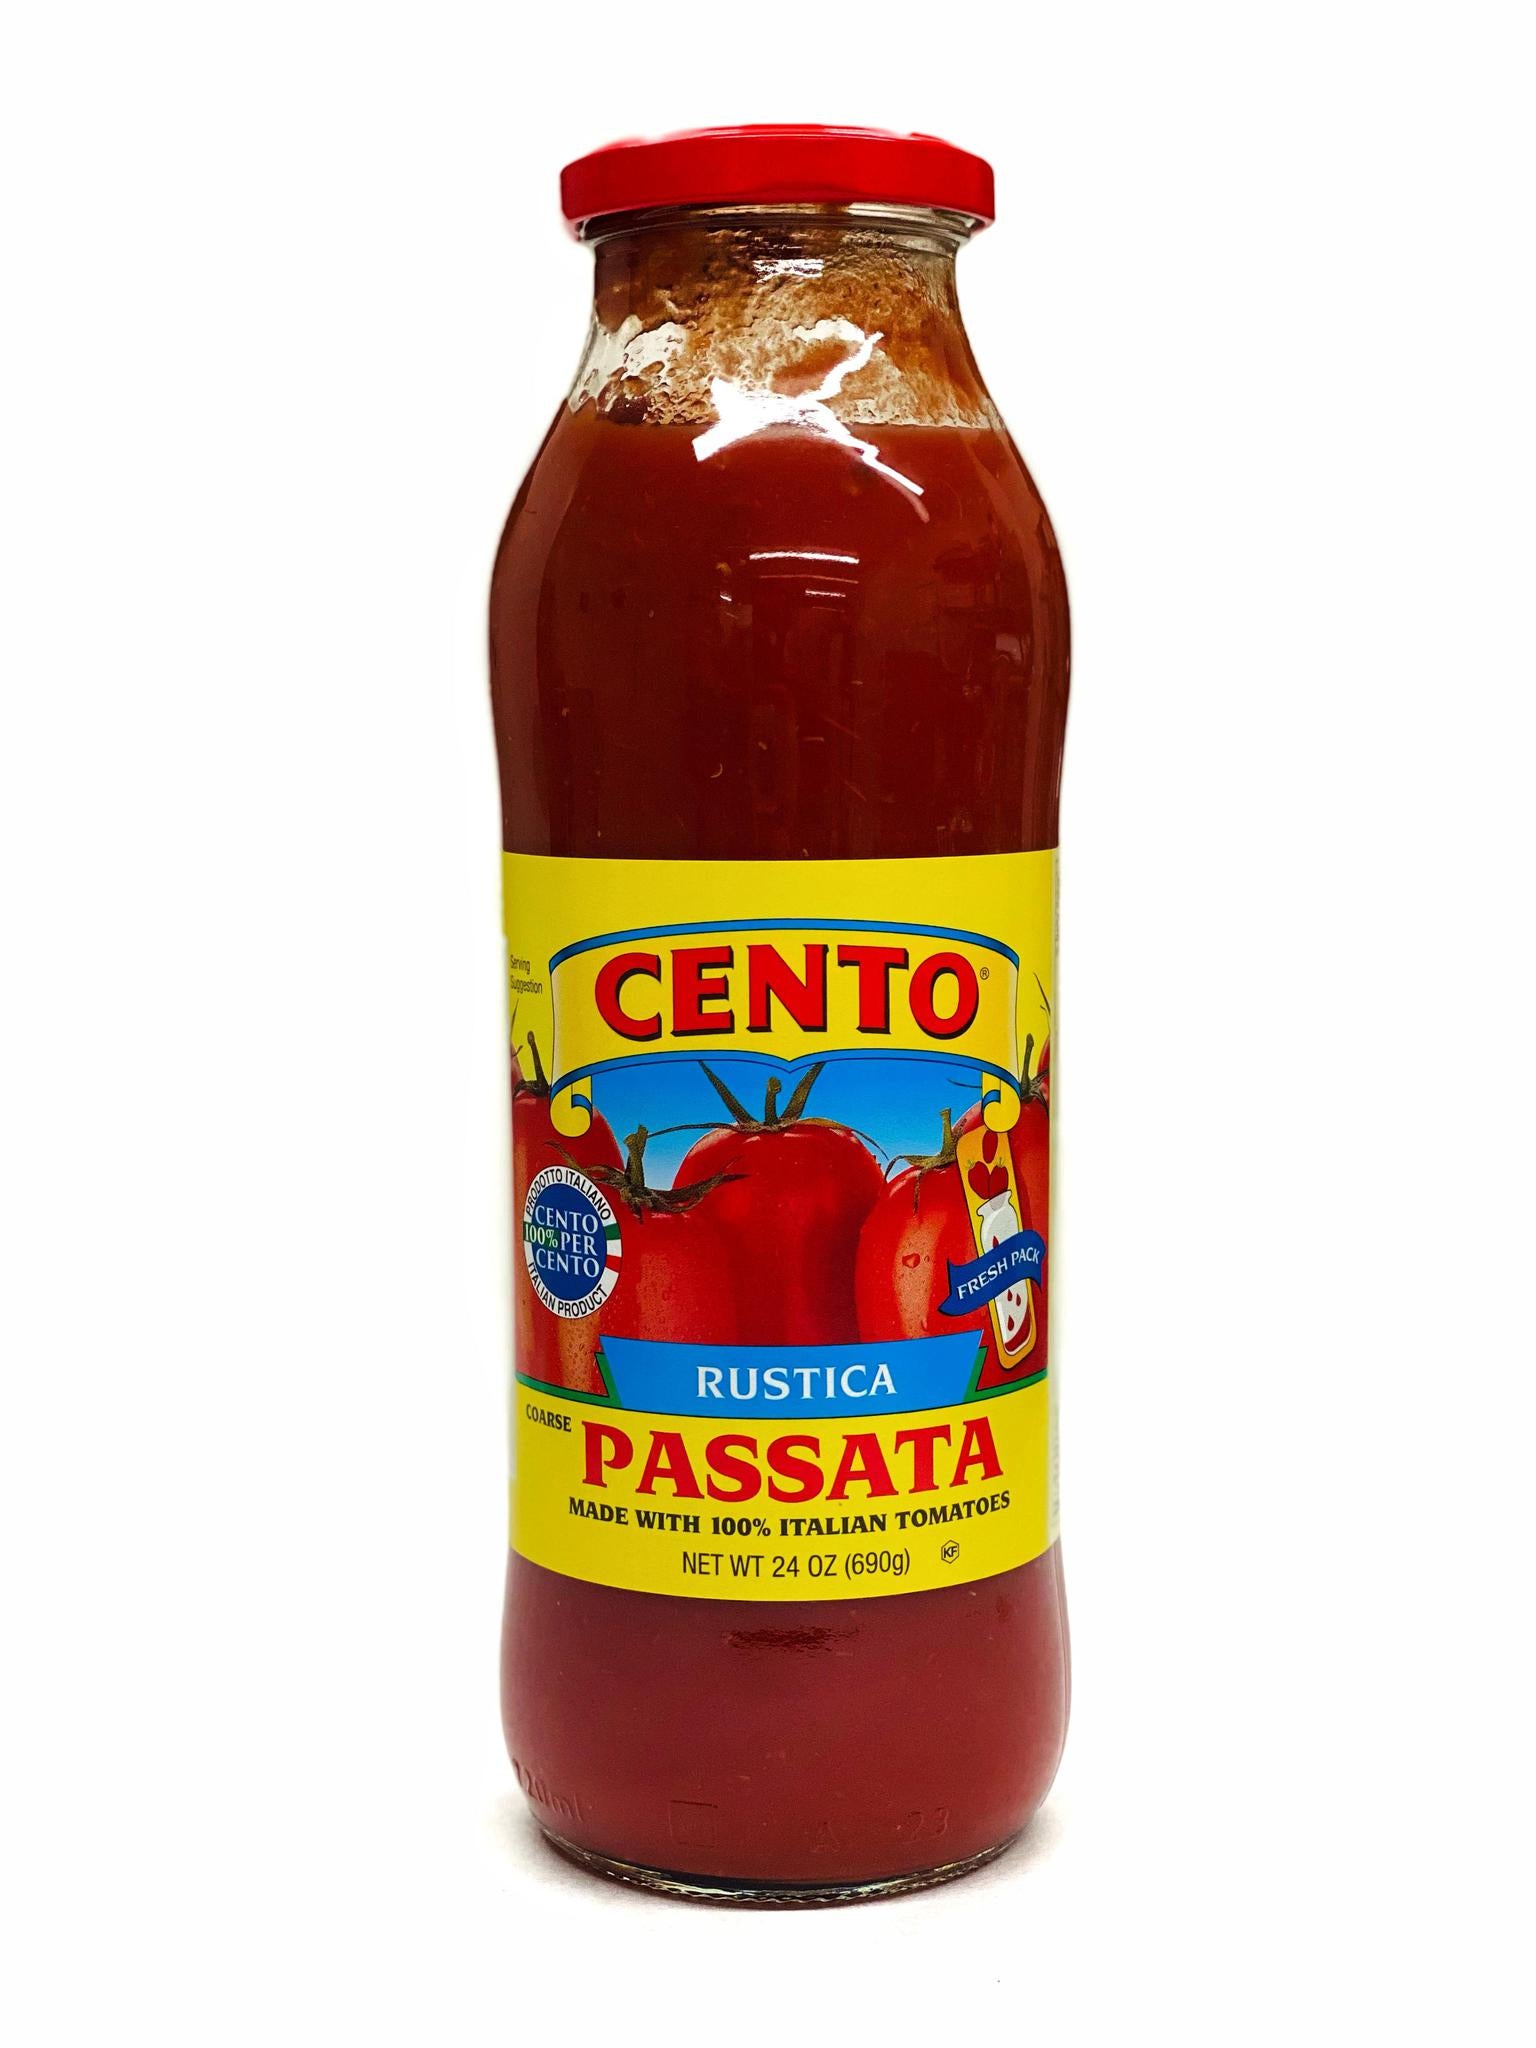 Cento Rustica Passata, 24 oz – Assenti's Pasta